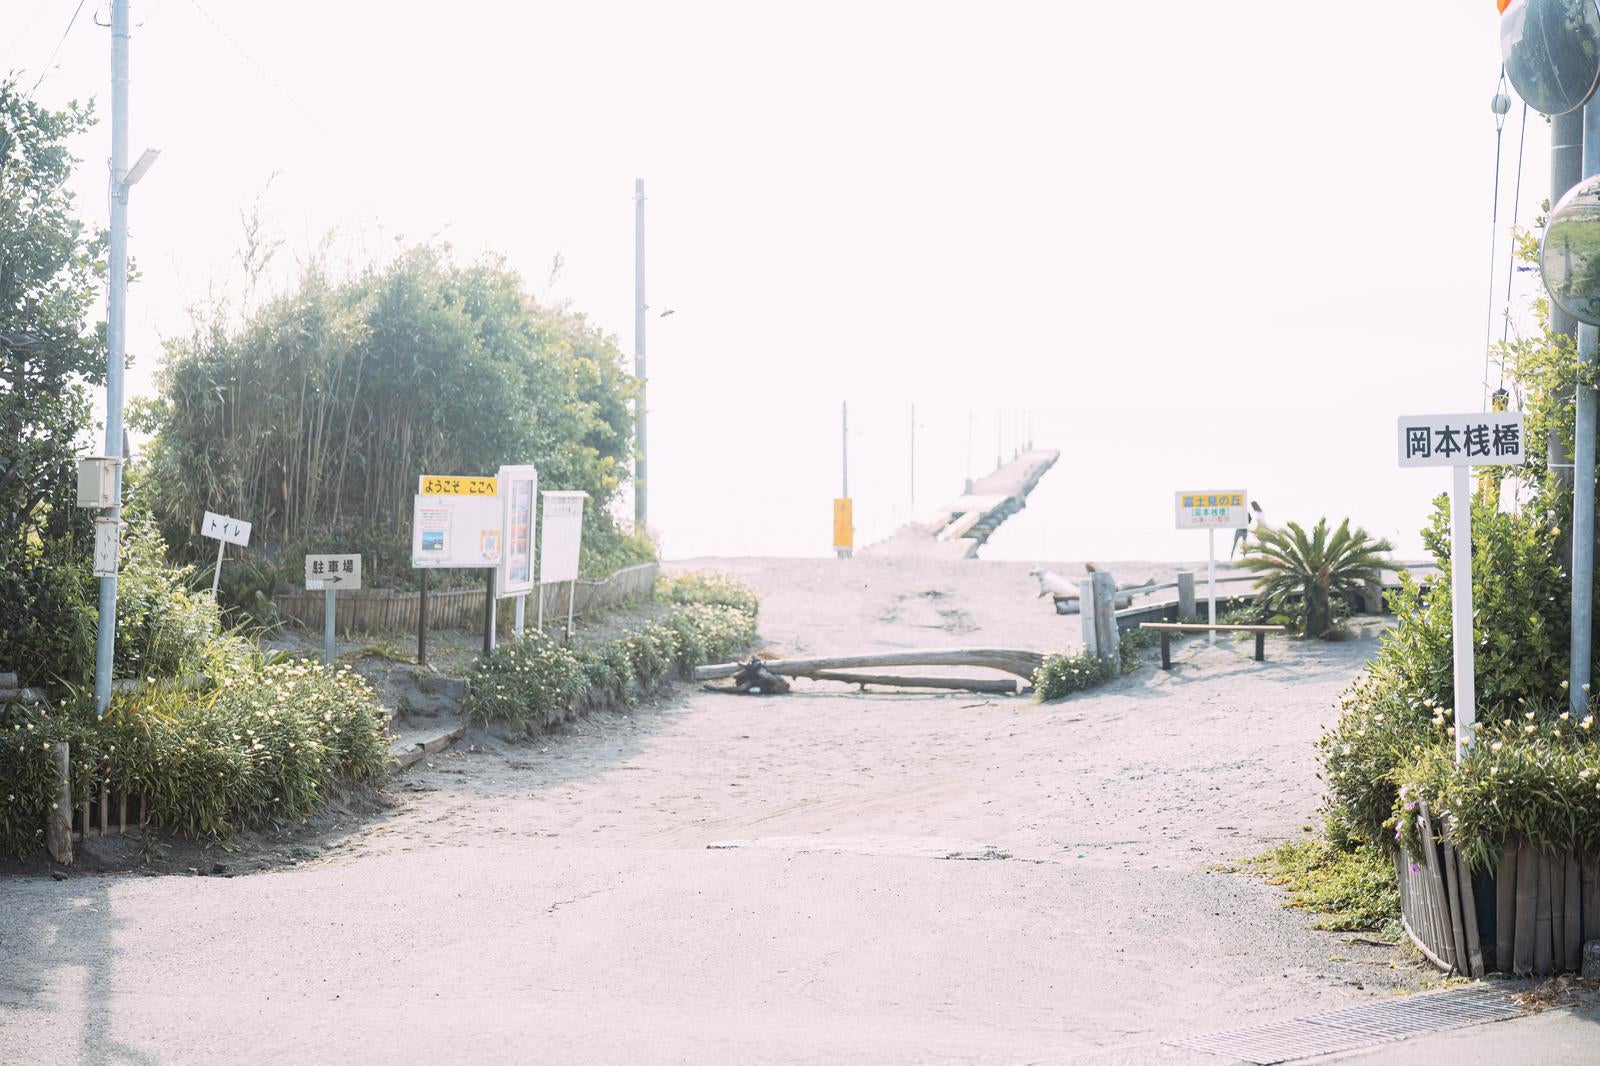 「原岡桟橋前の道路」の写真